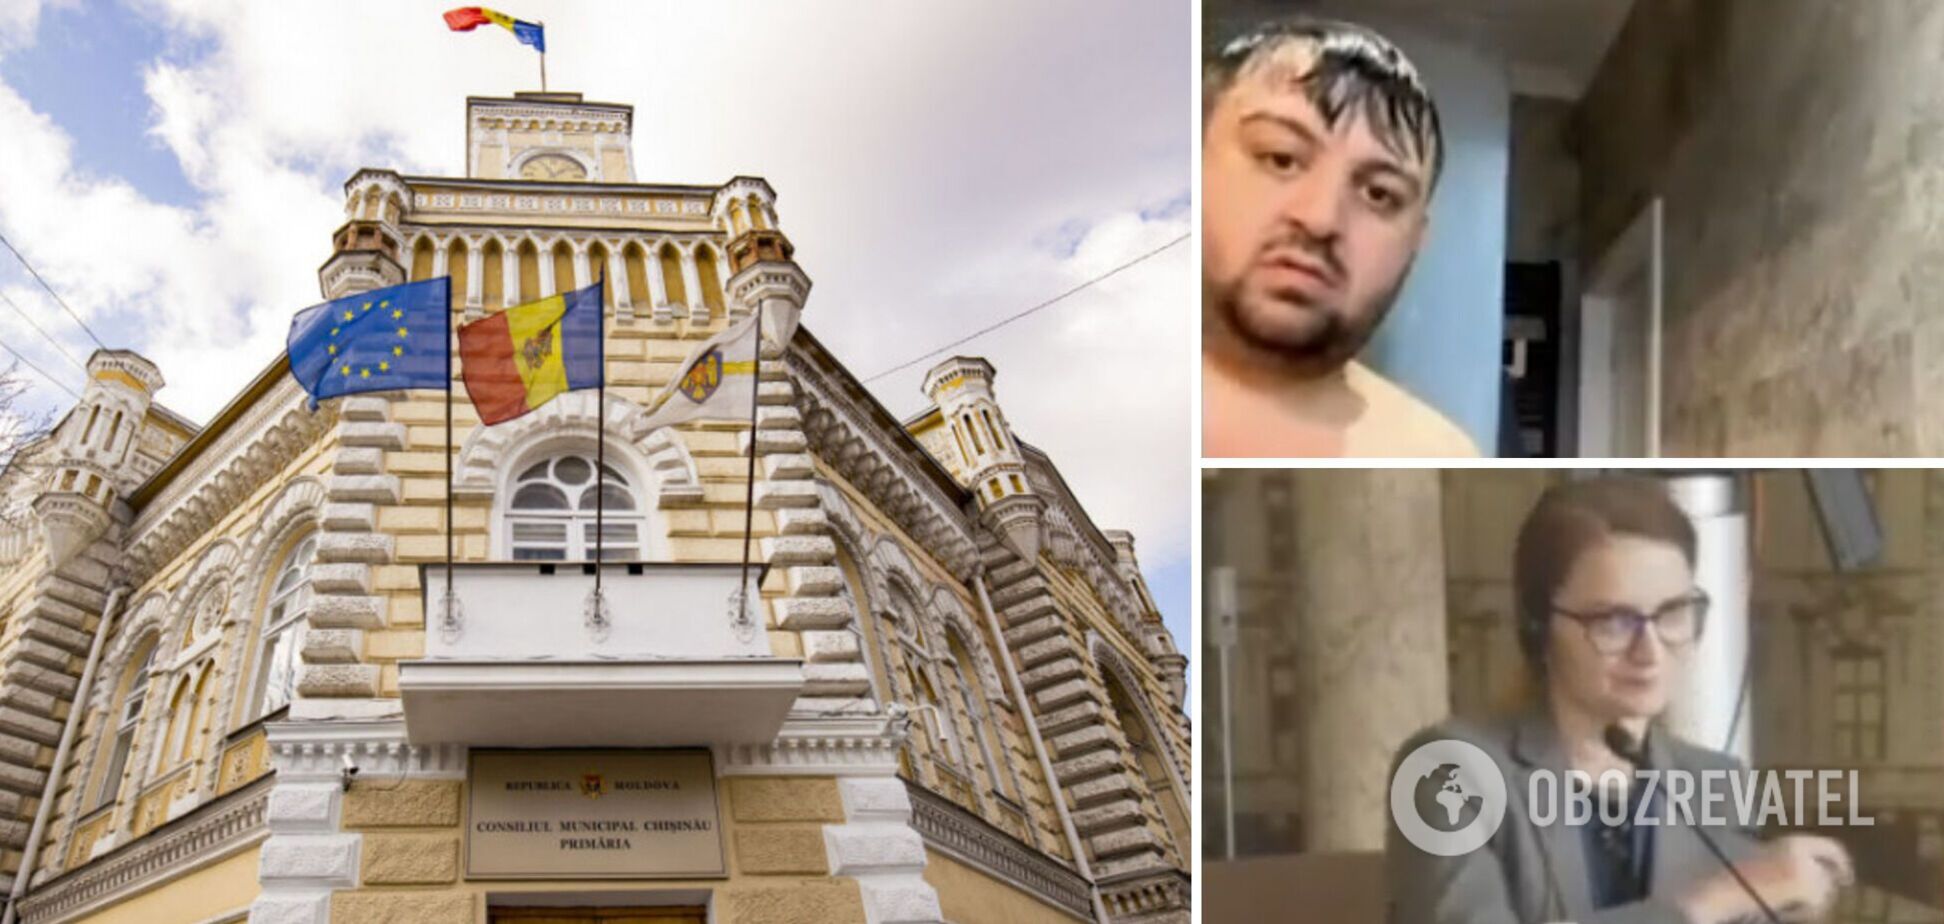 Забыл выключить камеру в душе: румынский политик случайно засветился на совещании голым и ушел в отставку. Видео